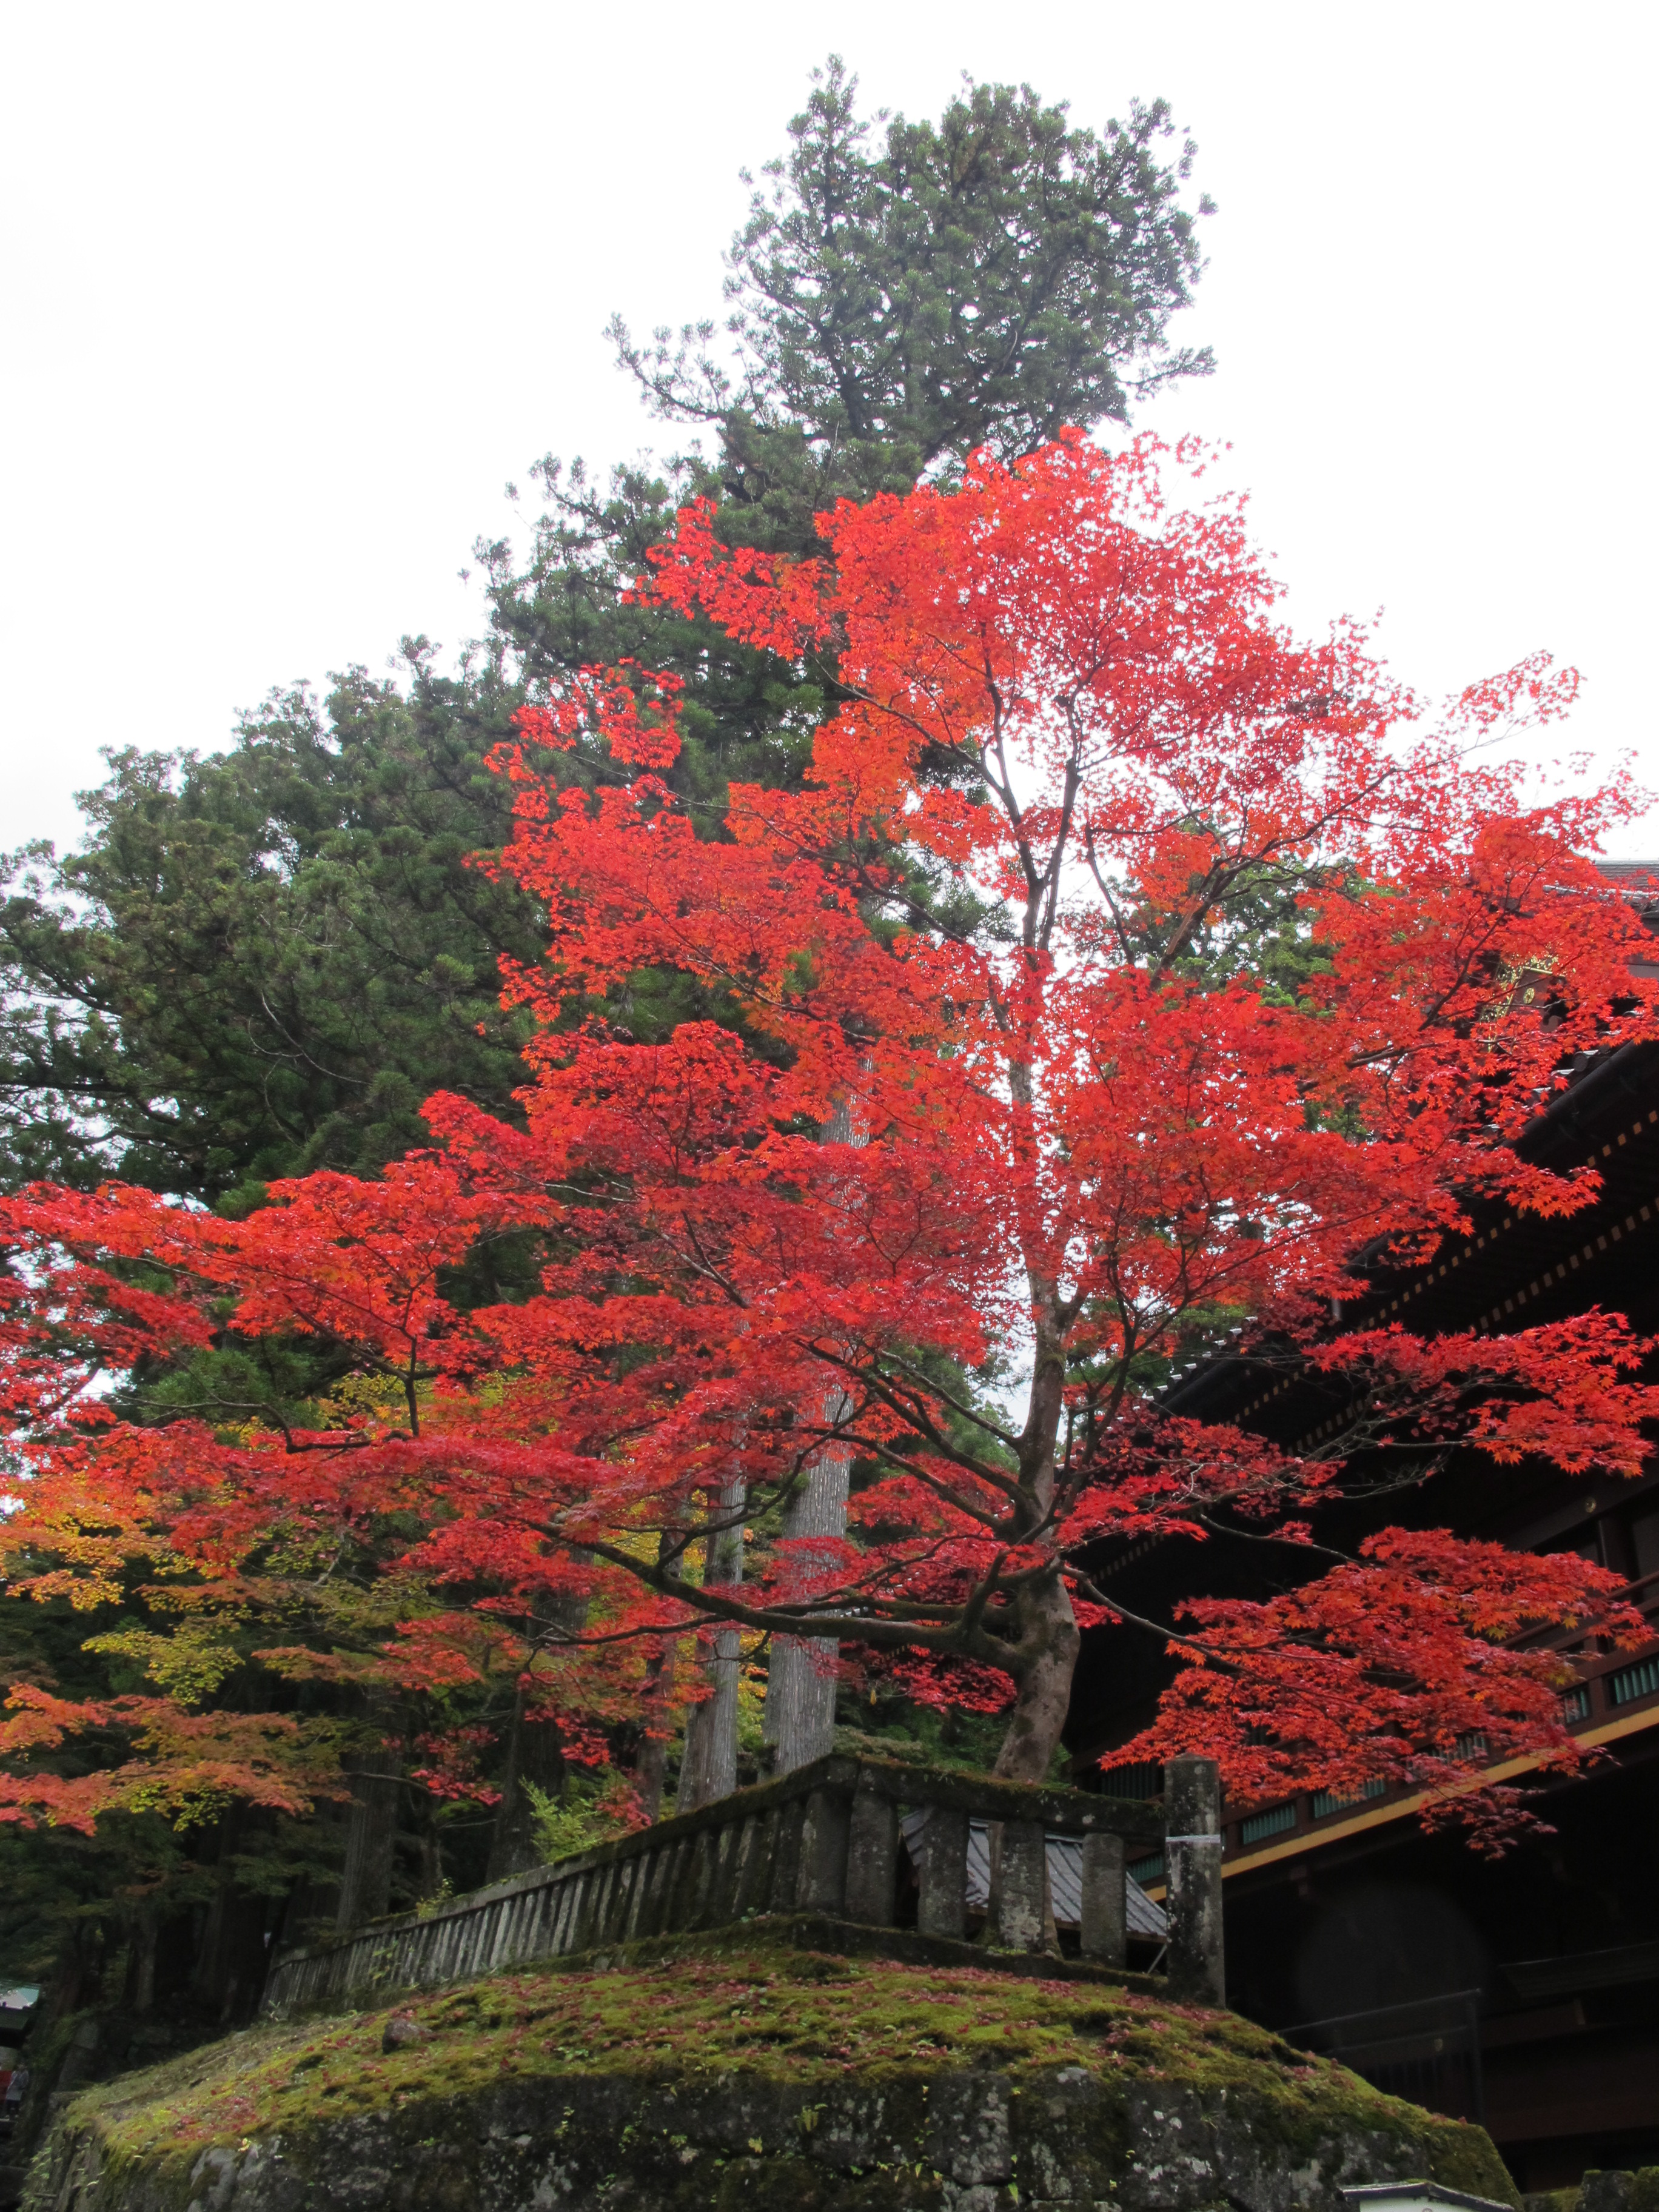 古峯神社と世界遺産日光バスツアーのおすすめポイント